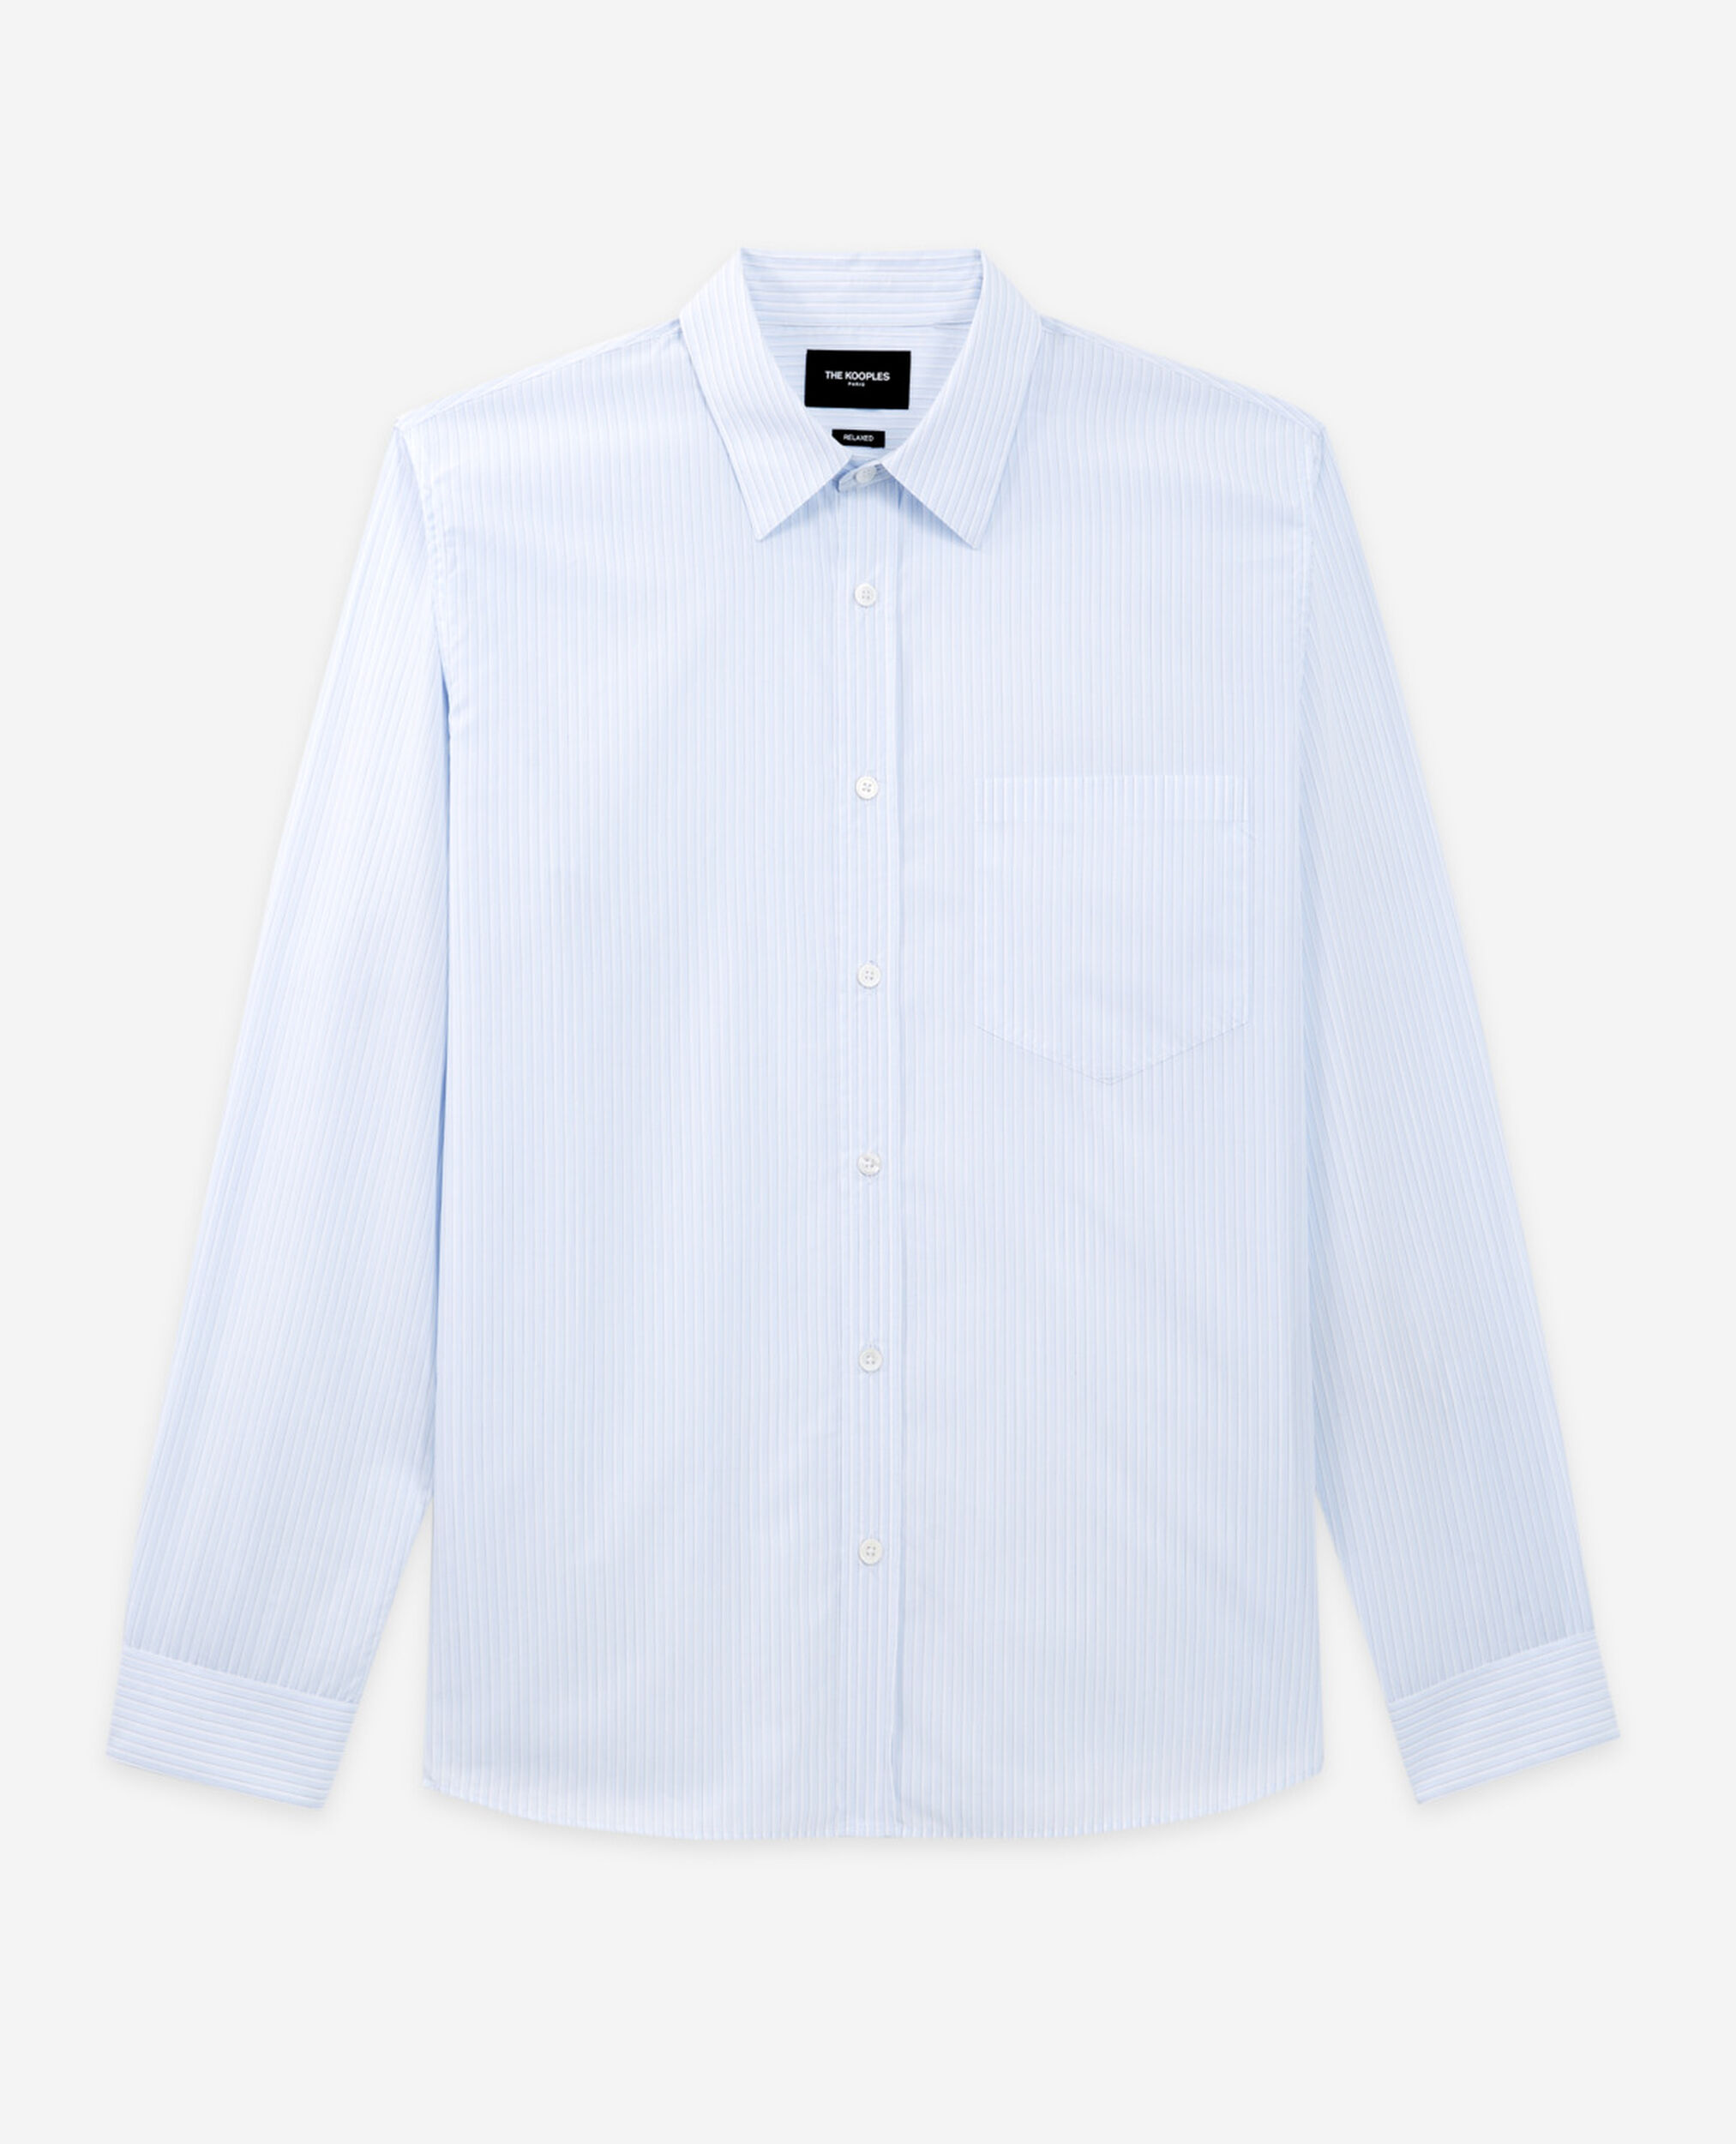 Baumwollhemd weiß feine Streifen, WHITE / SKY BLUE, hi-res image number null